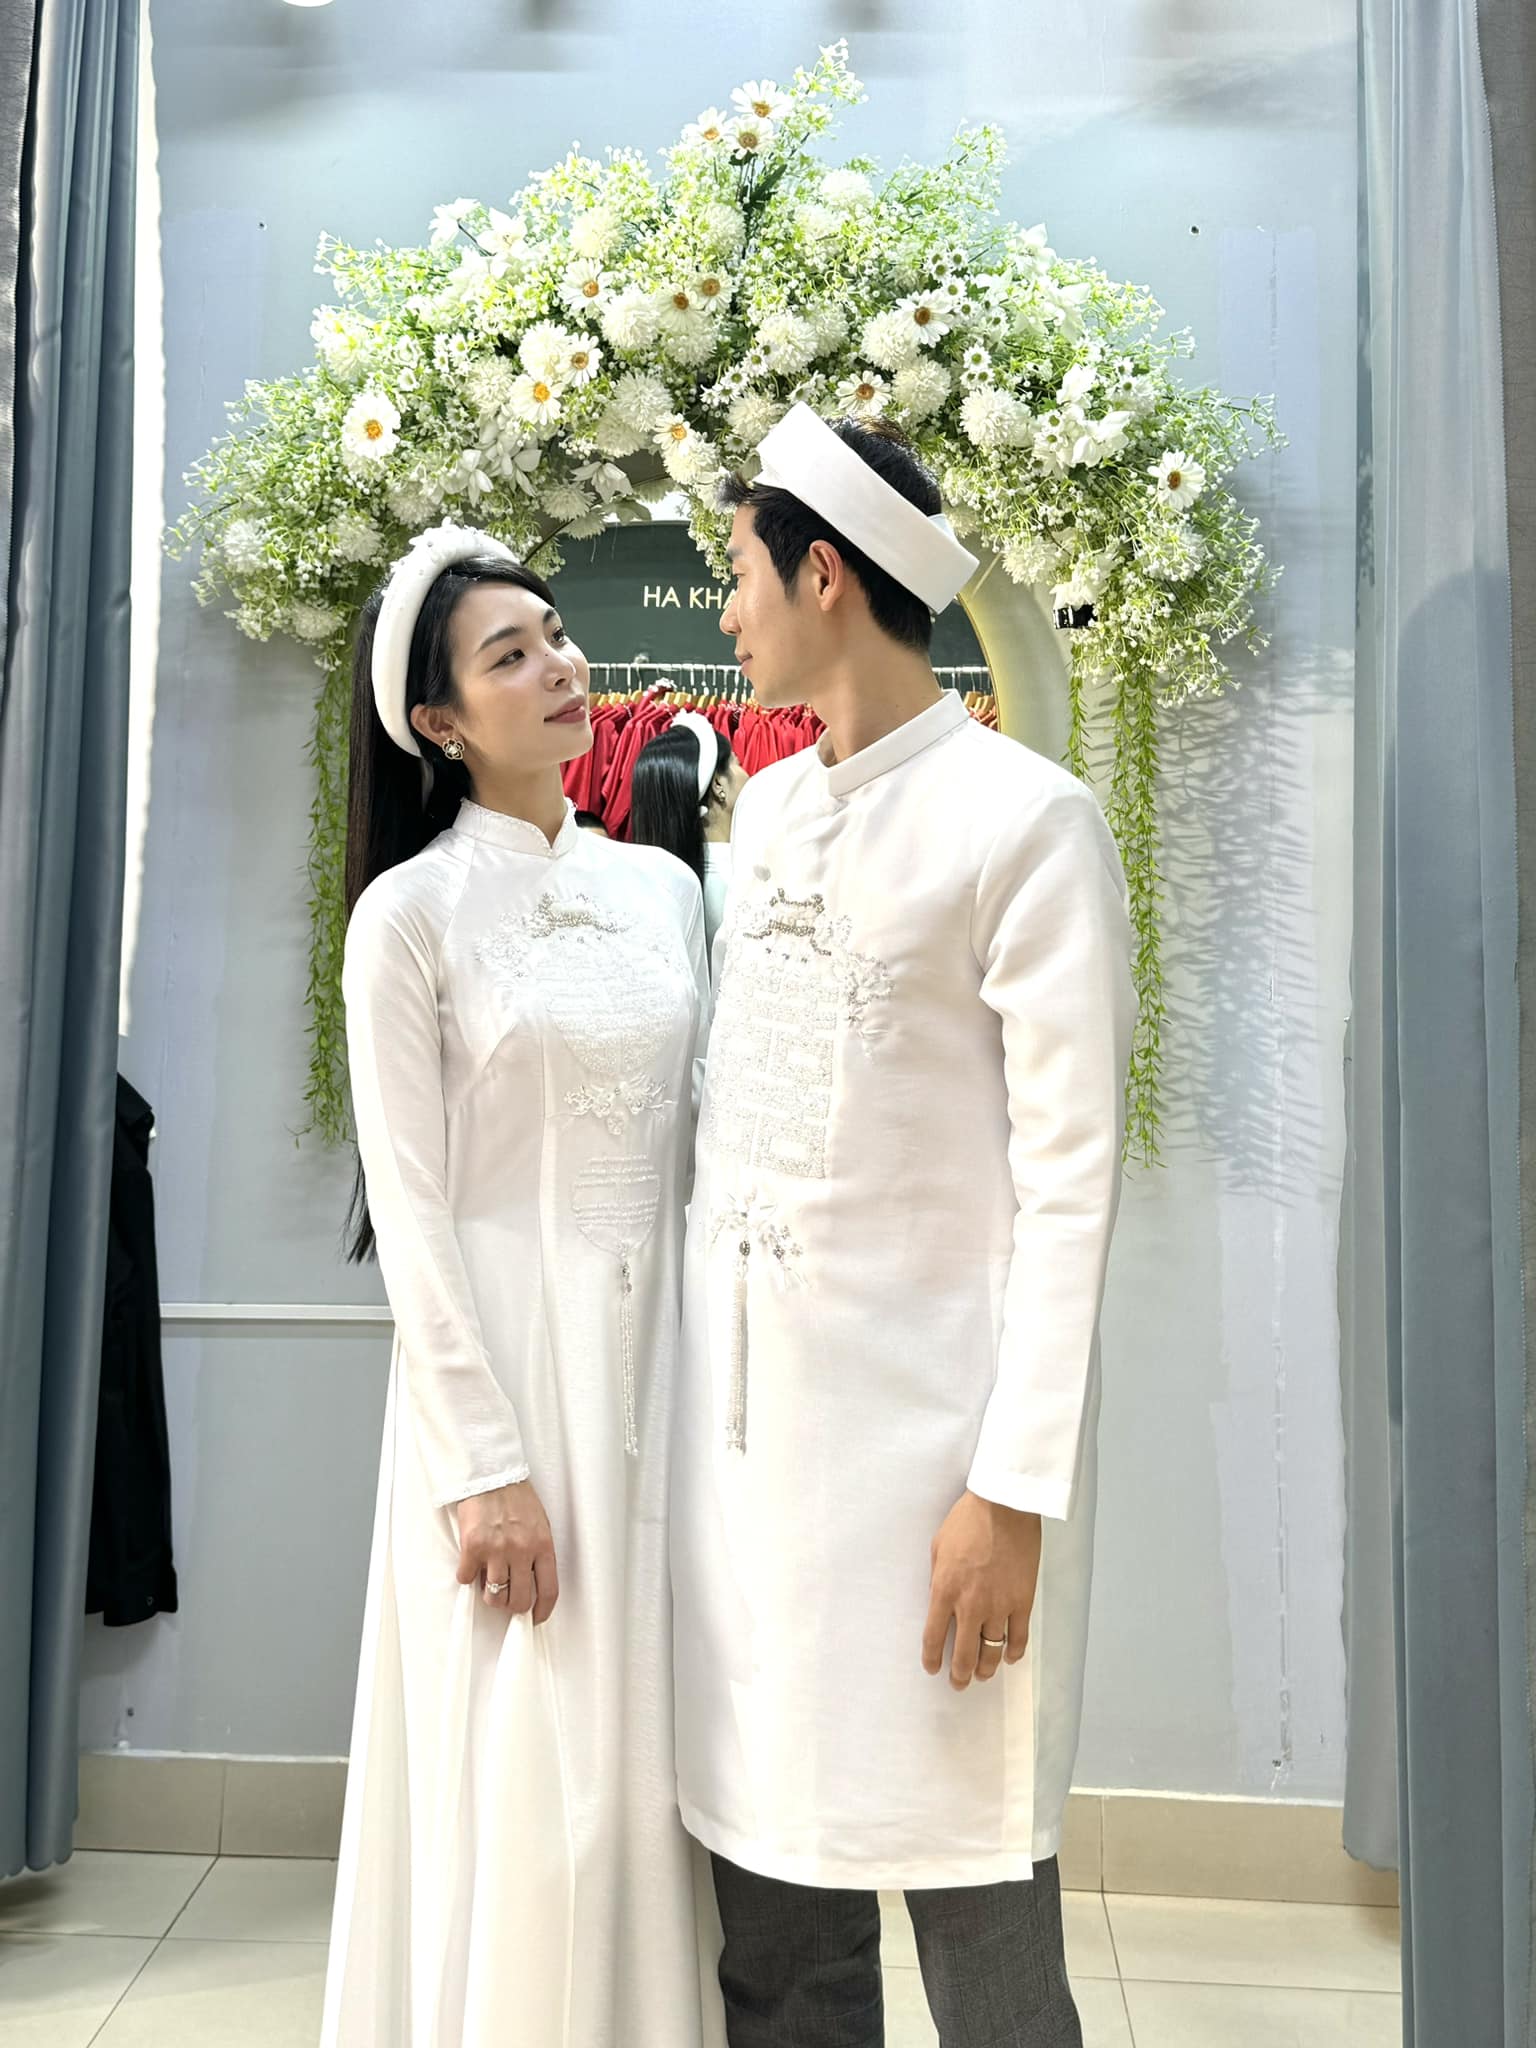 TikToker Hương Nổi xác nhận đã ly hôn và có 2 con trước khi tổ chức đám cưới với bạn trai người Hàn - ảnh 2